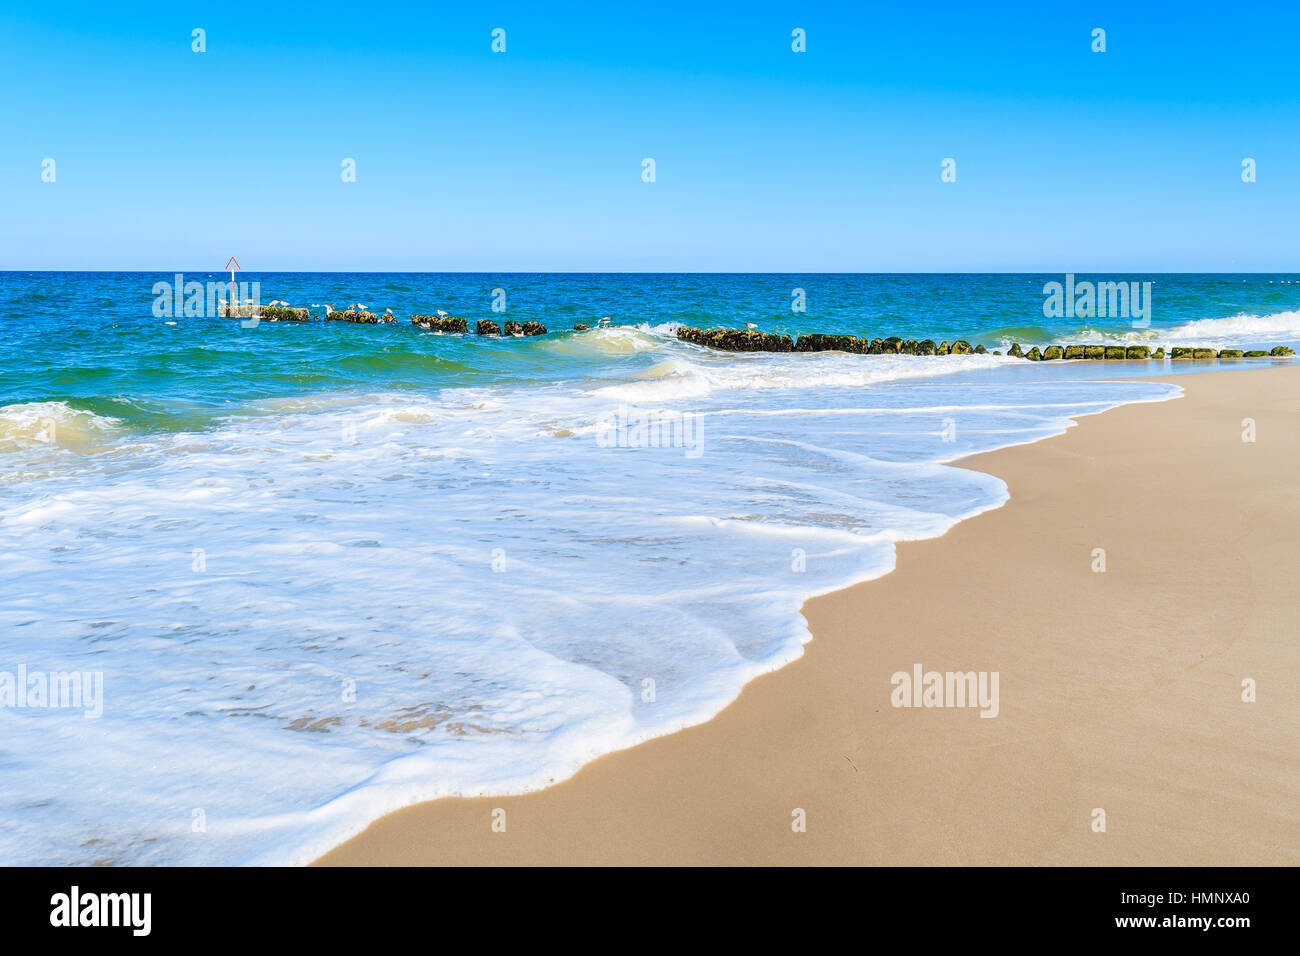 Sea waves on a beach, Sylt island, Germany Stock Photo